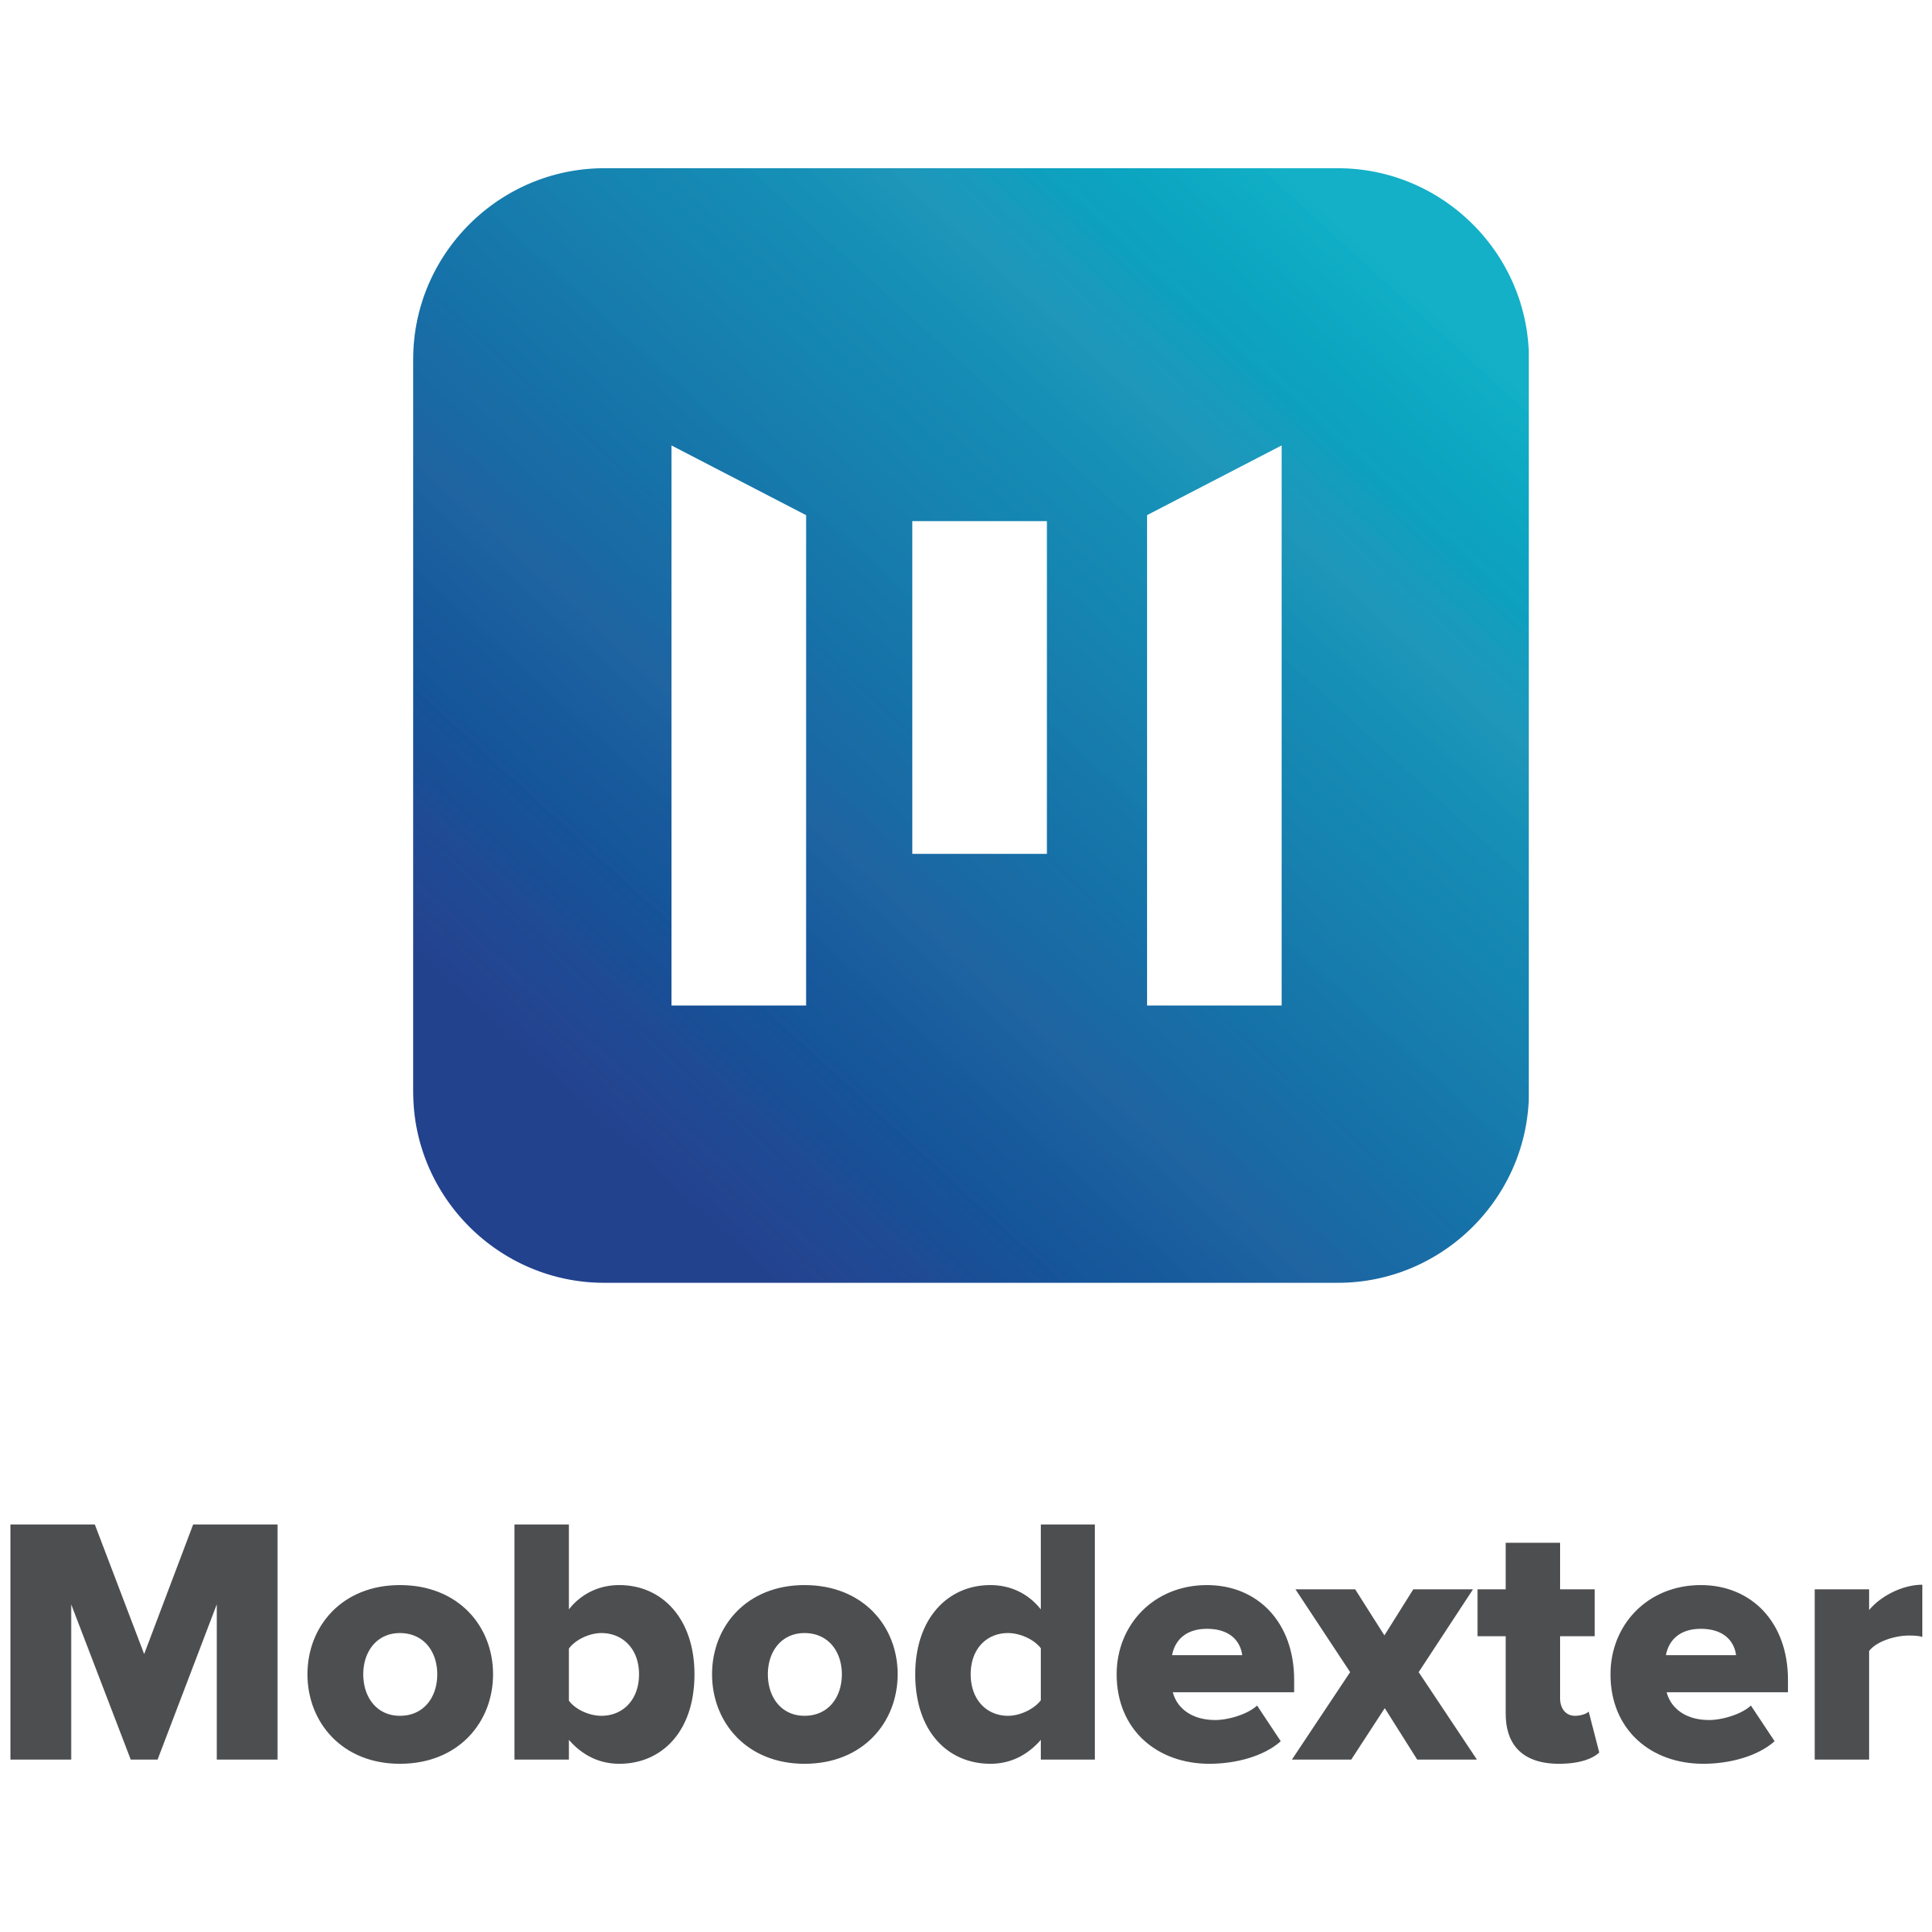 Mobodexter Inc